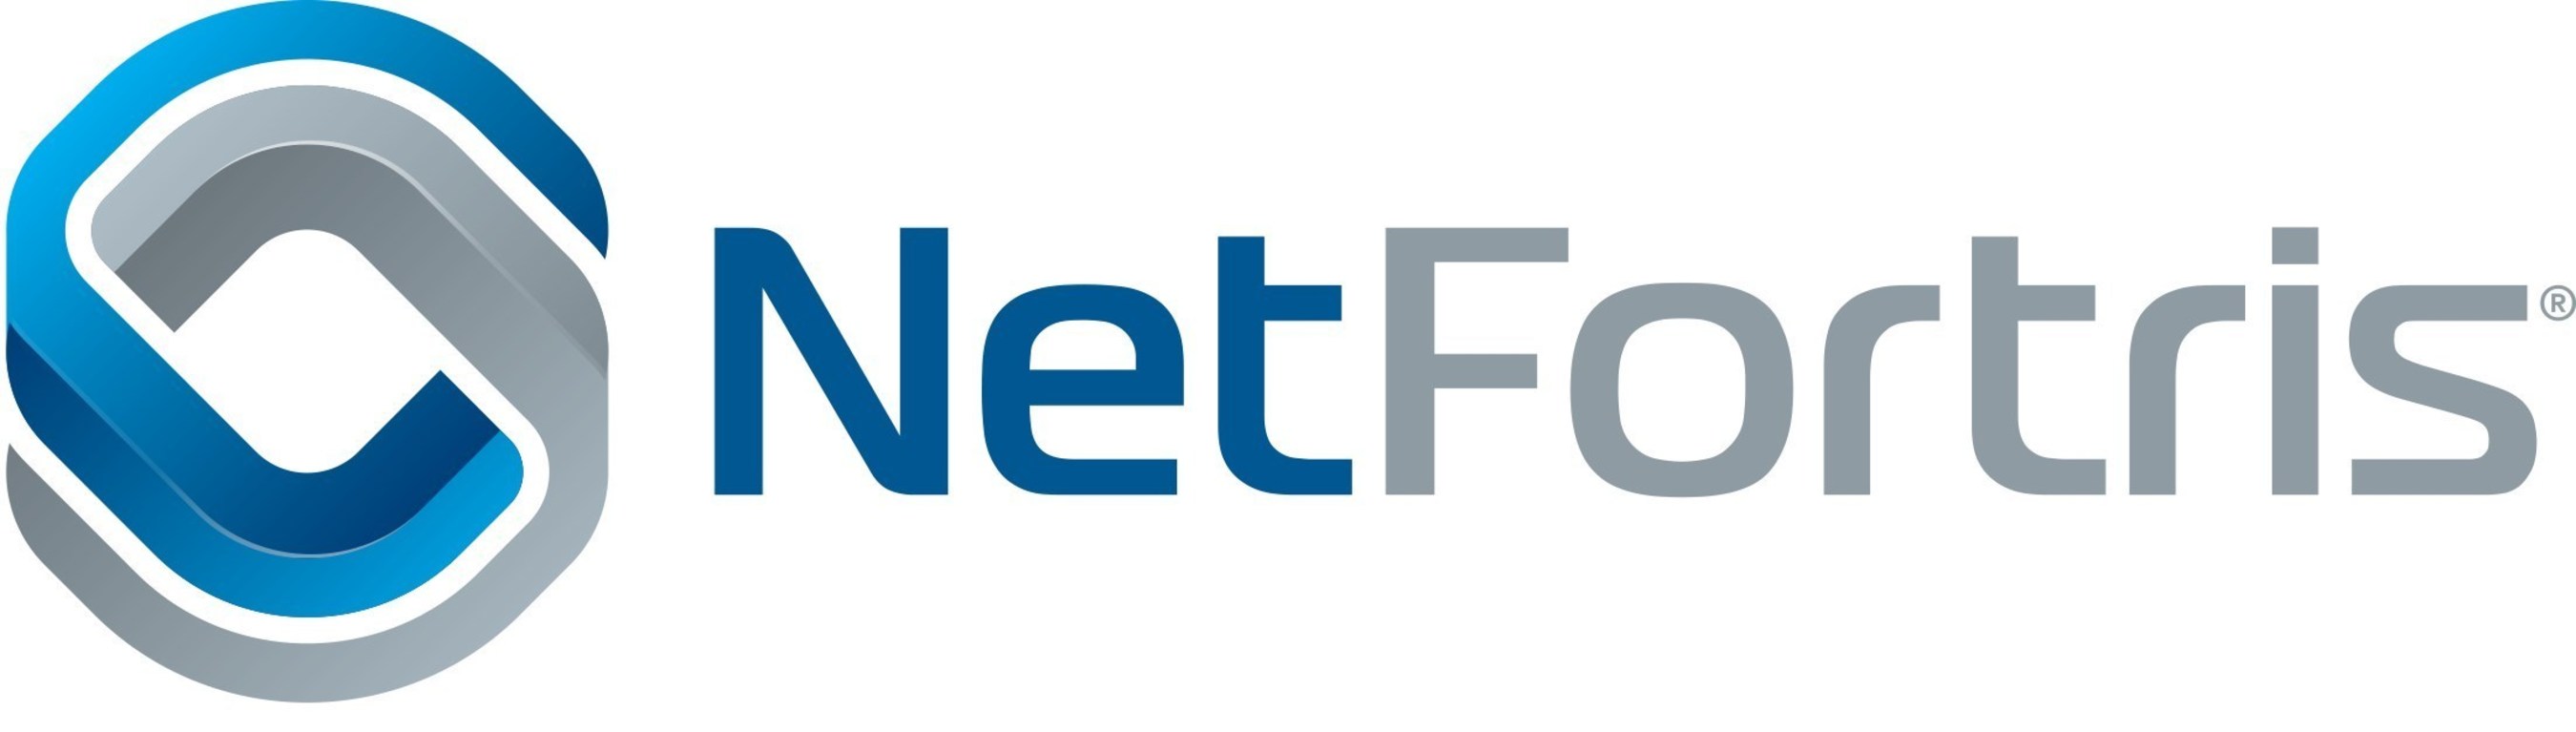 NetFortris, Inc. logo.